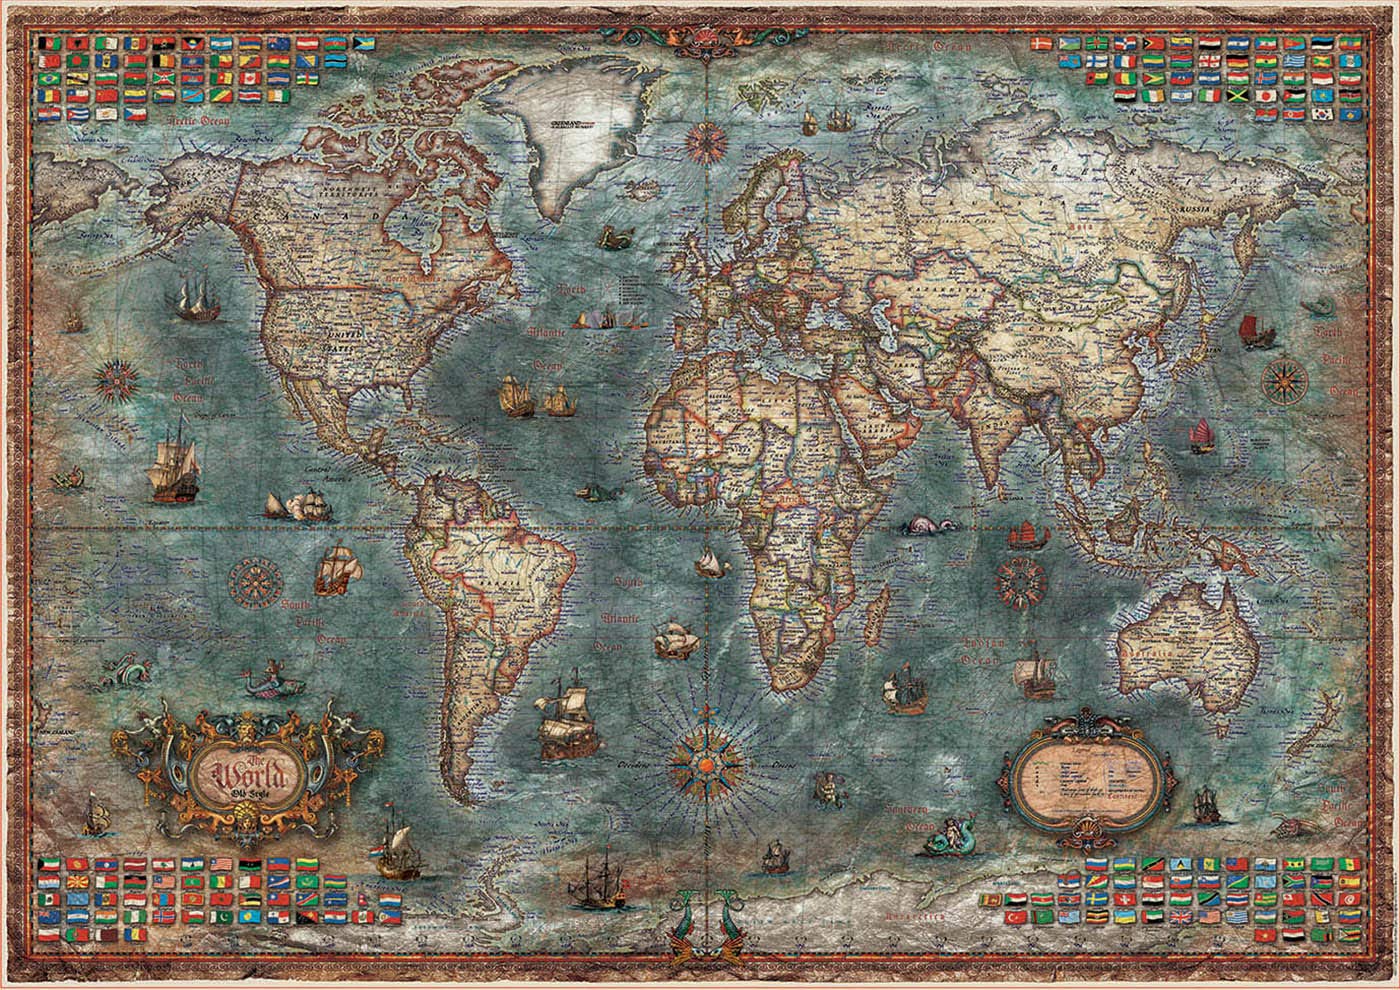 Puzzle Mapa del mundo histórico